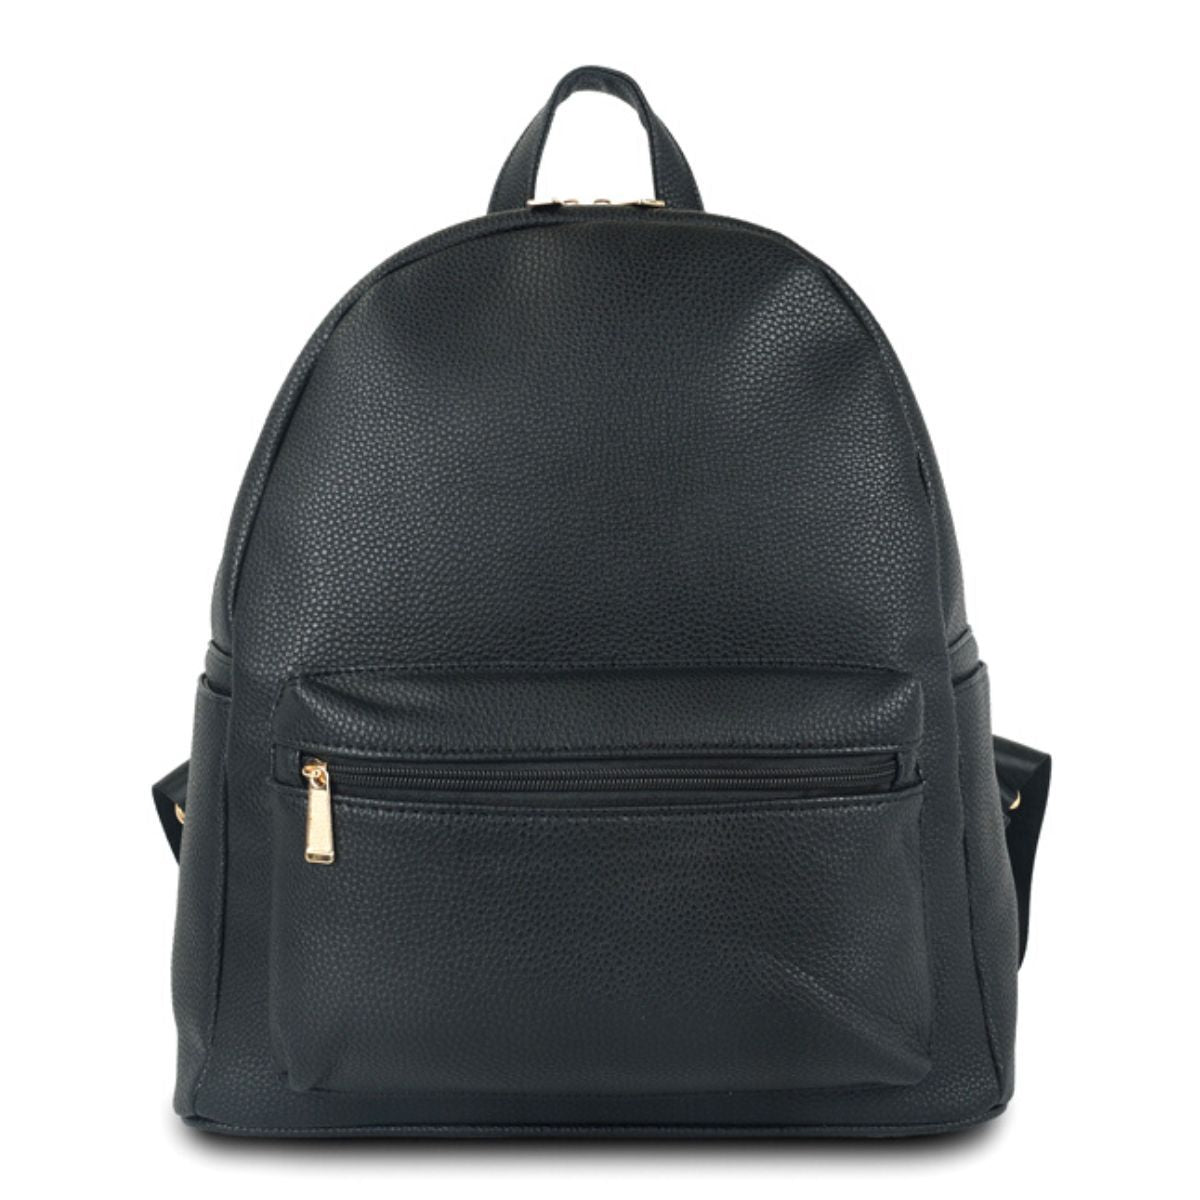 Black School Daypack Backpack